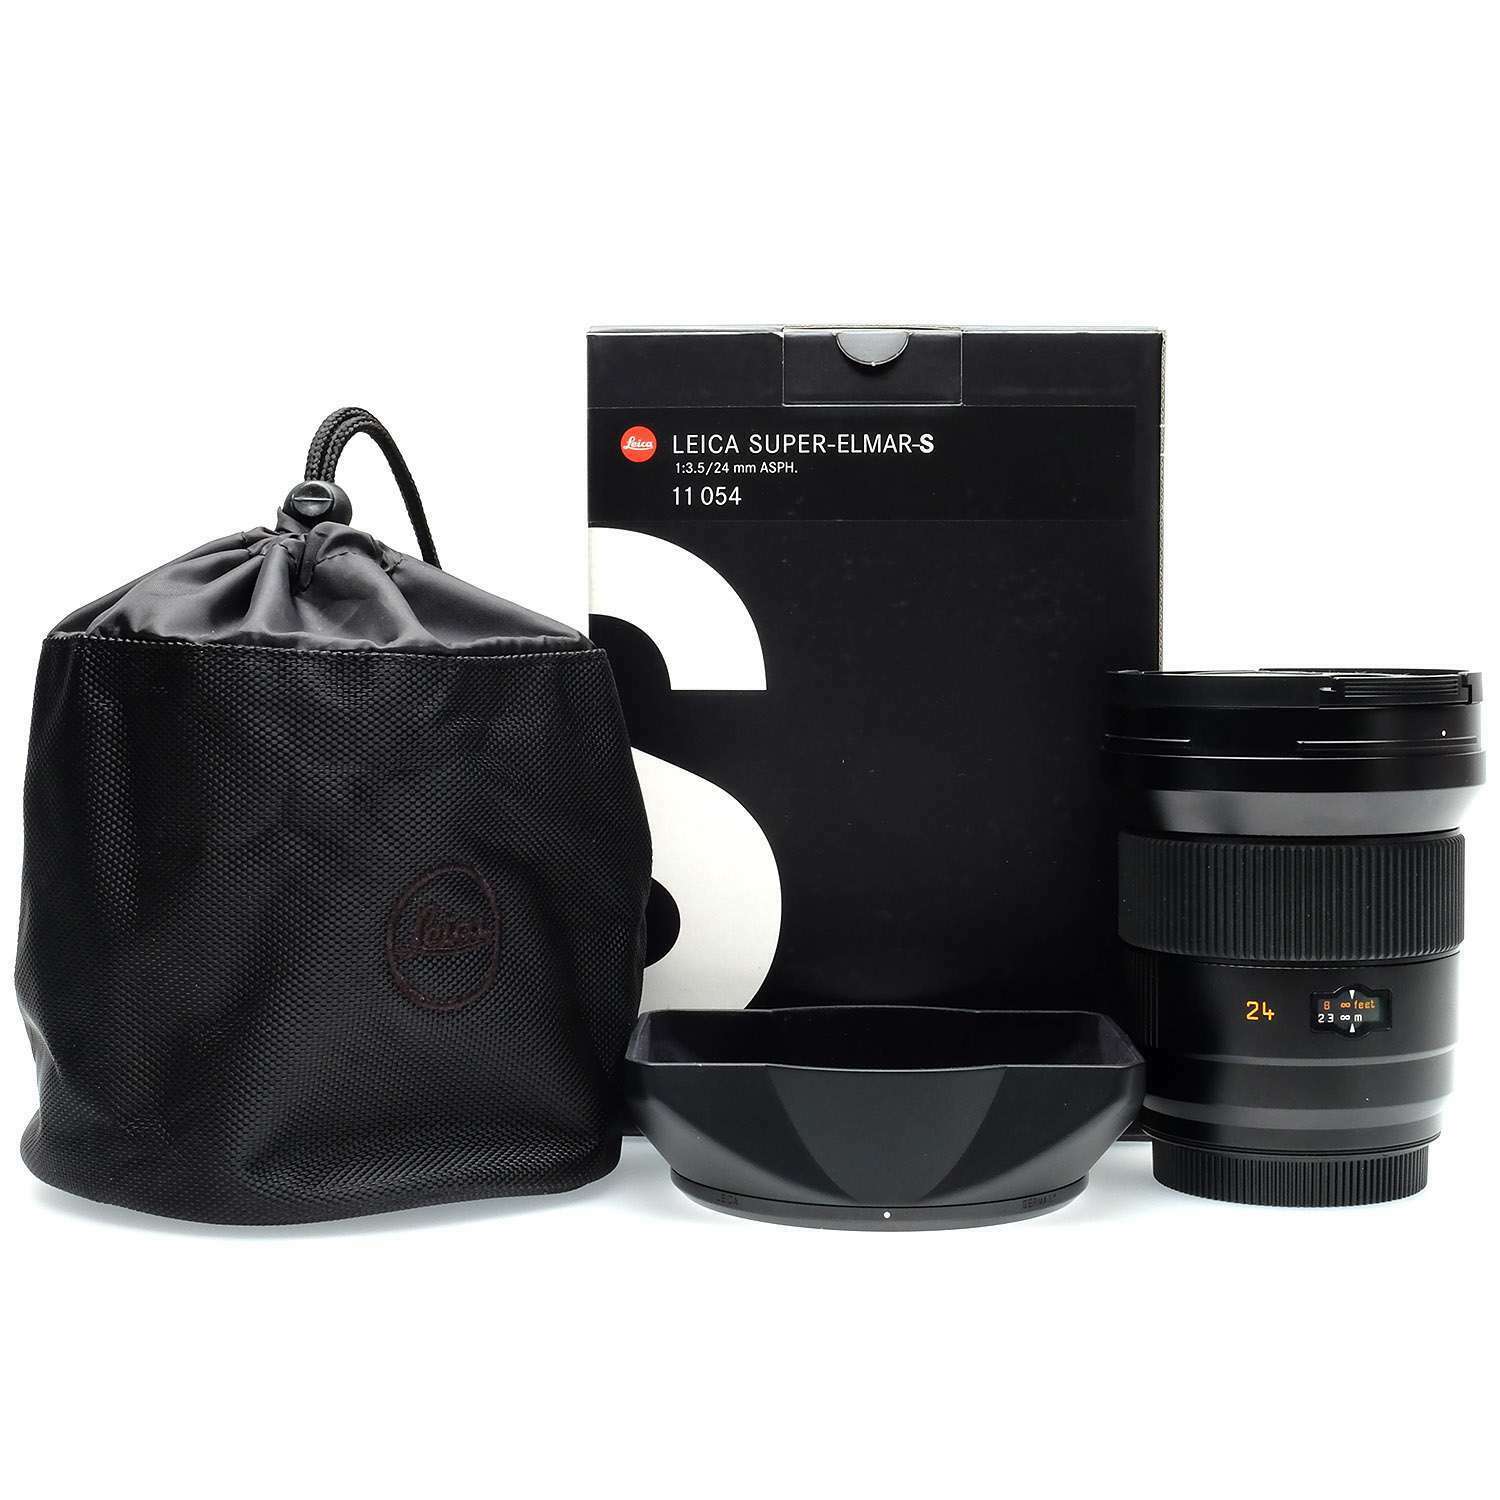 徕卡 Leica S 24/3.5 SUPER-ELMAR-S ASPH 广角镜头 带包装 